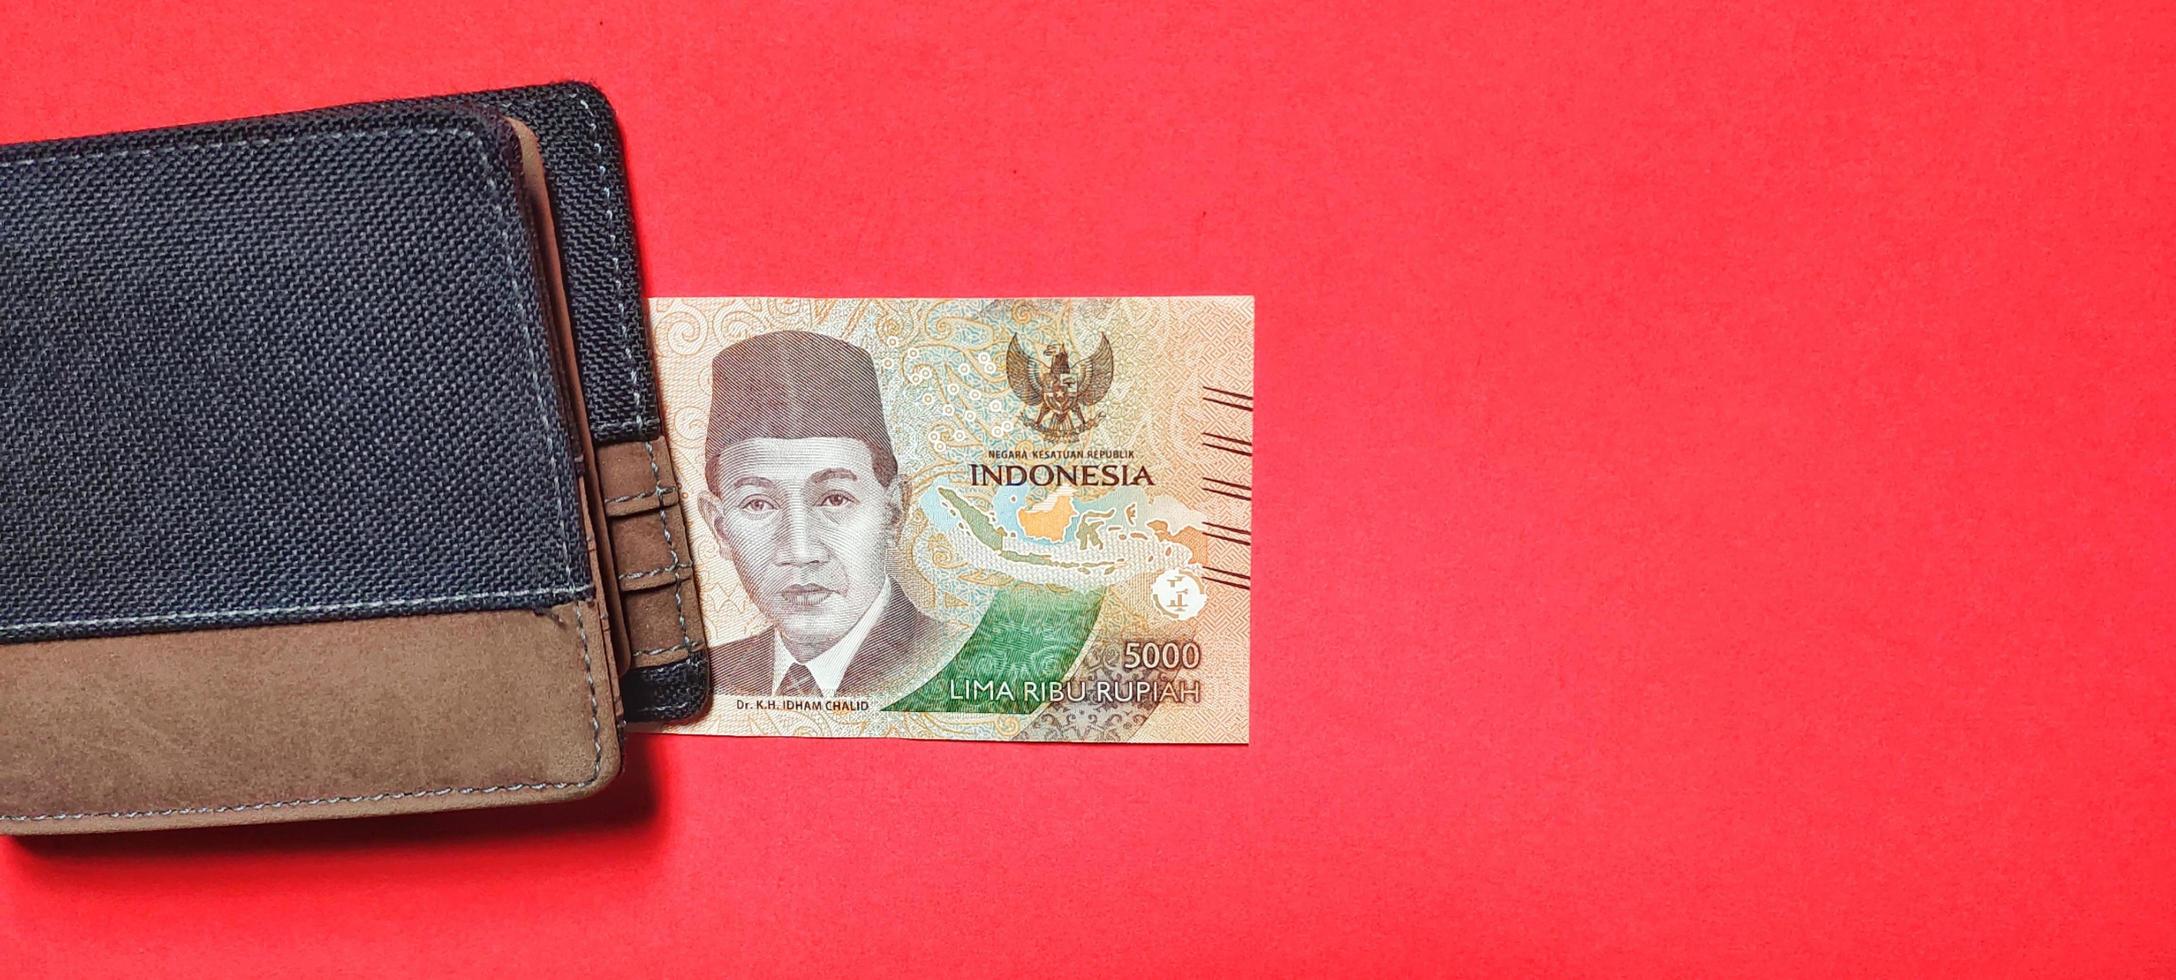 la última edición de billetes de rupias indonesias por valor de 5.000 rupias y una cartera marrón. foto